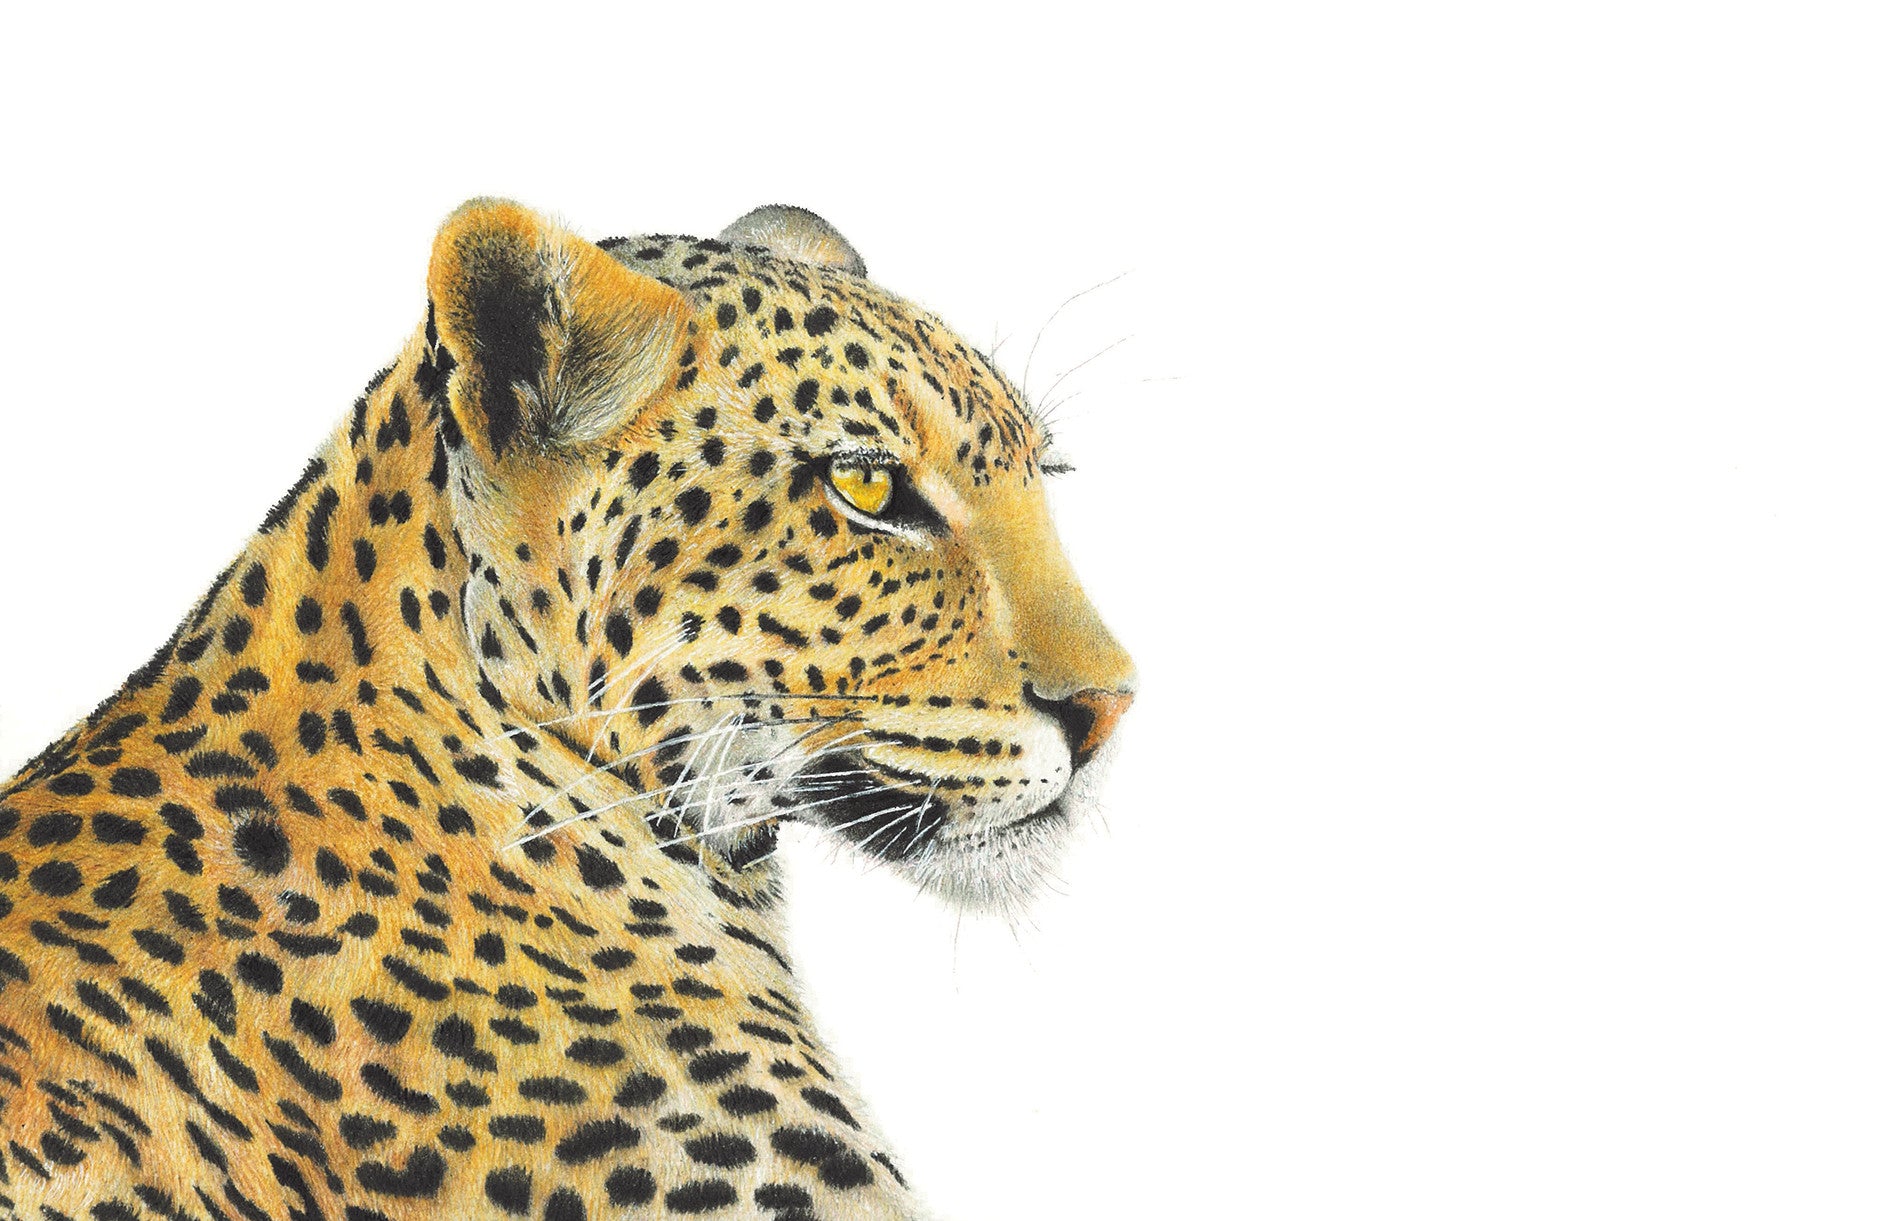 Leopard profile portrait artwork